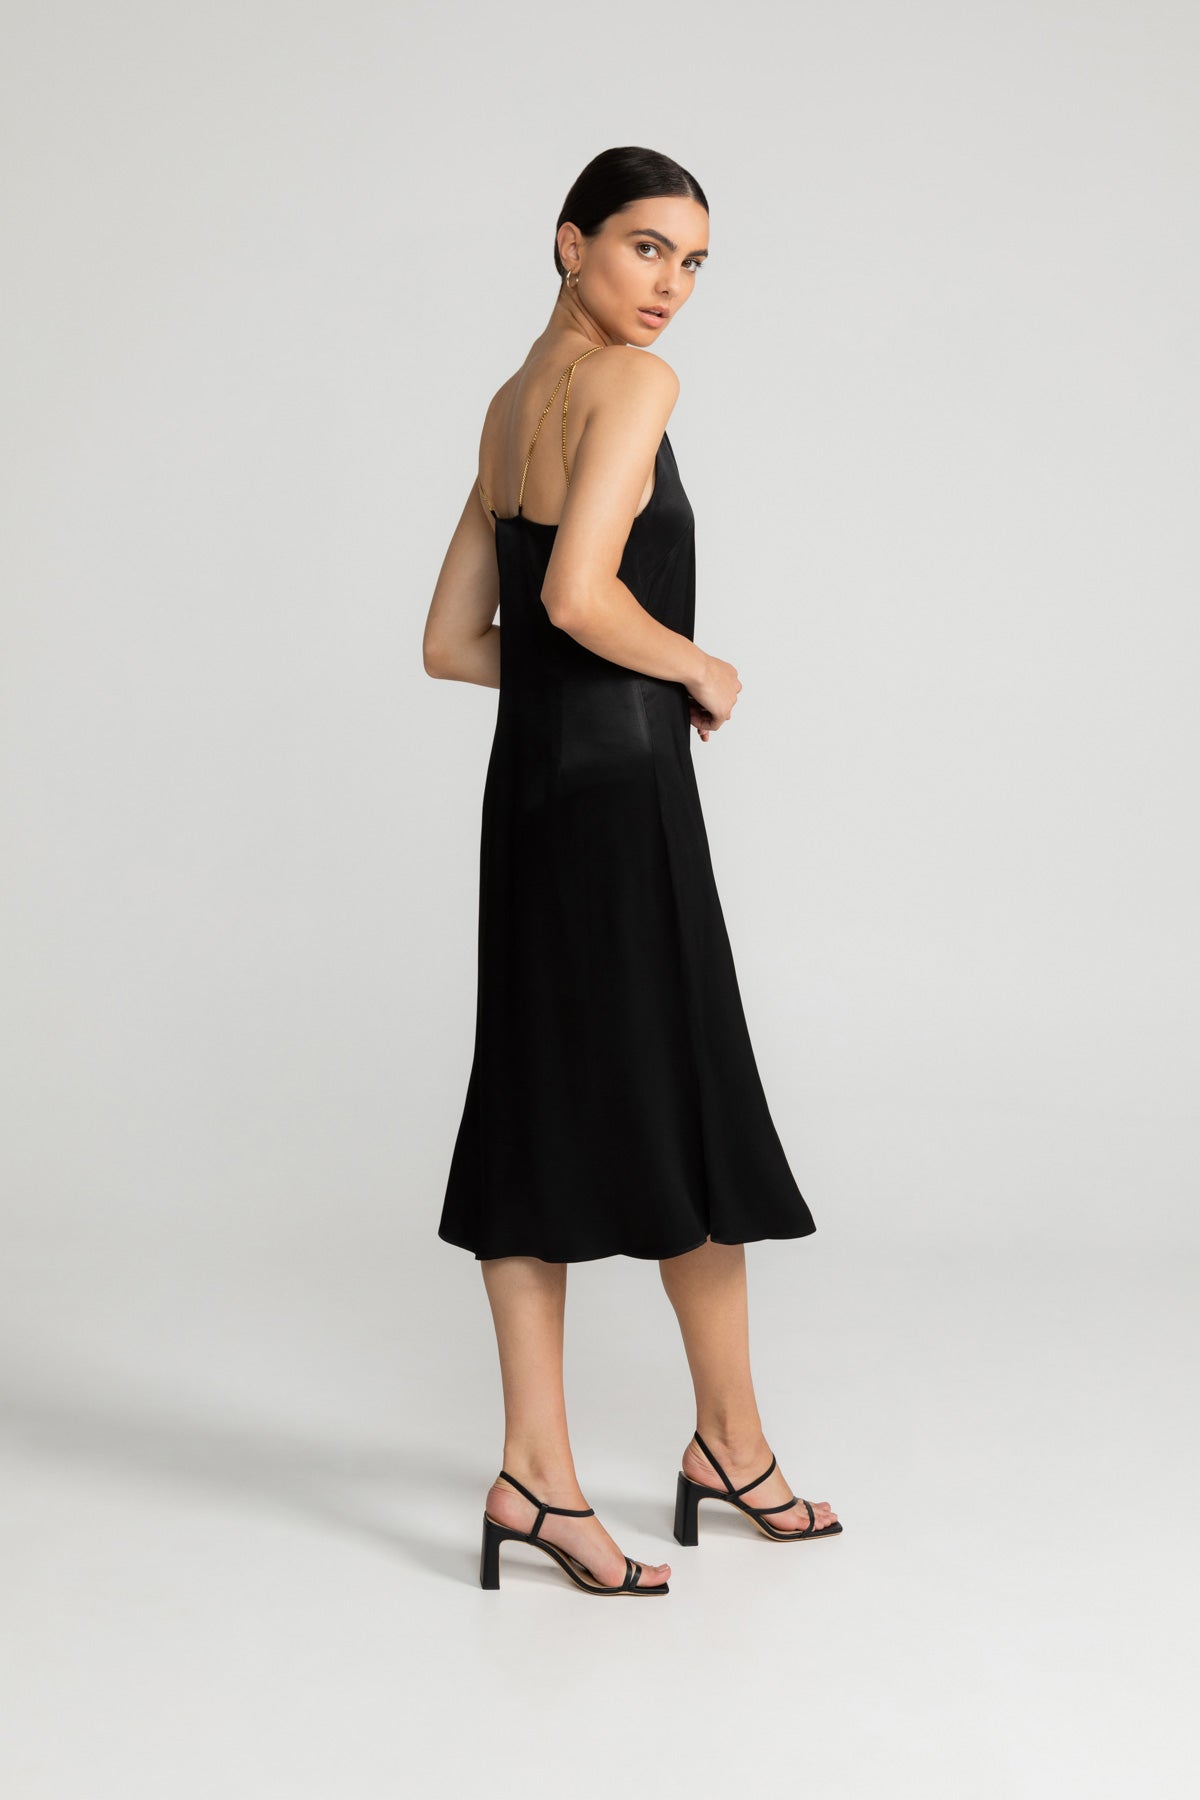 Kleid ELANIE in schwarz von LOVJOI aus nachhaltiger ENKA® Viskose und ECOVERO™ (ST)